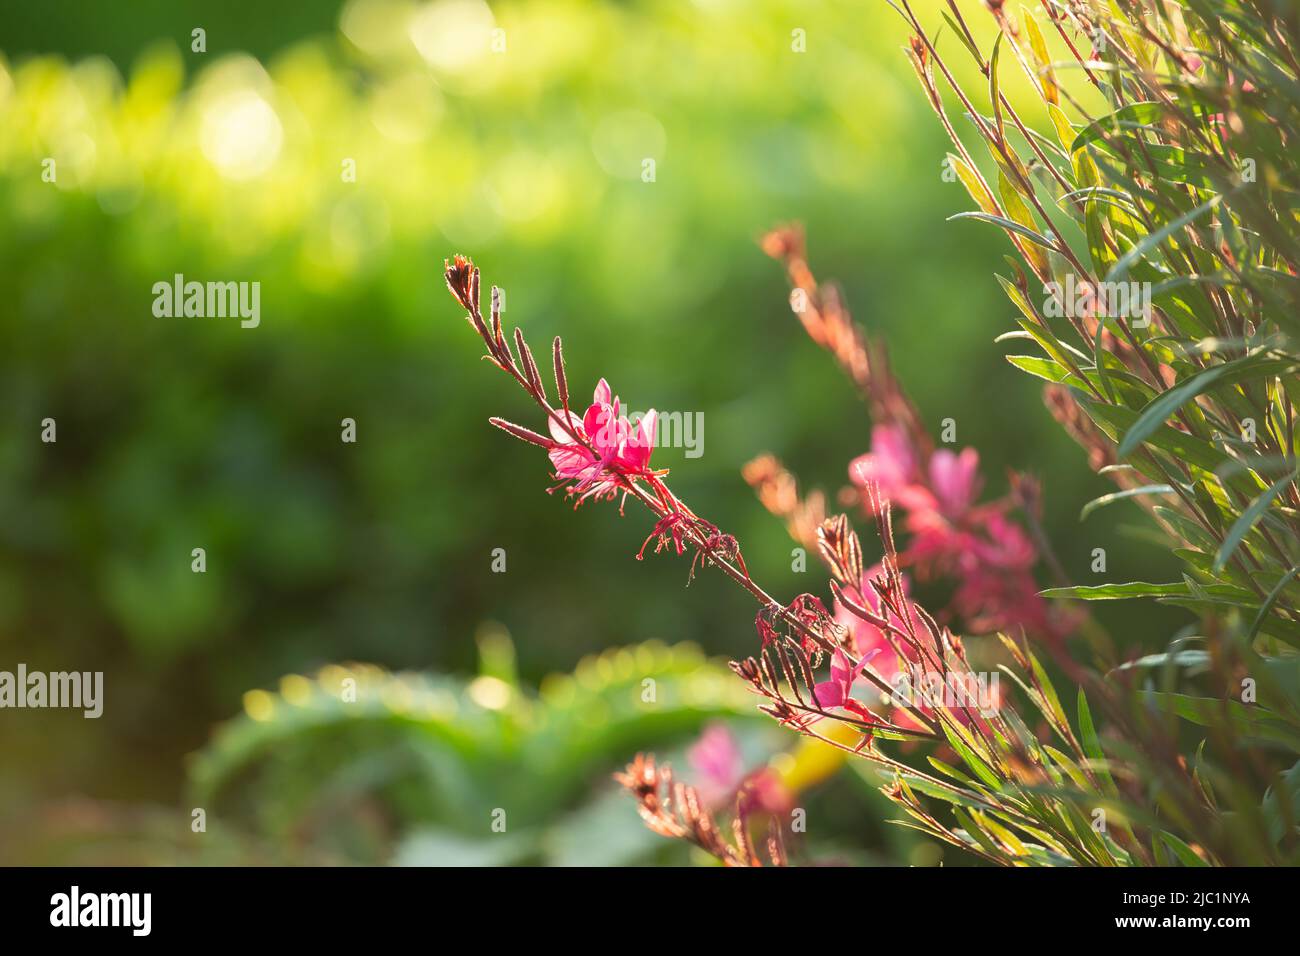 Gaura lindheimeri Gaudi Pink Florgaured , pink garden flowers also known as Lindheimer's beeblossom. Stock Photo